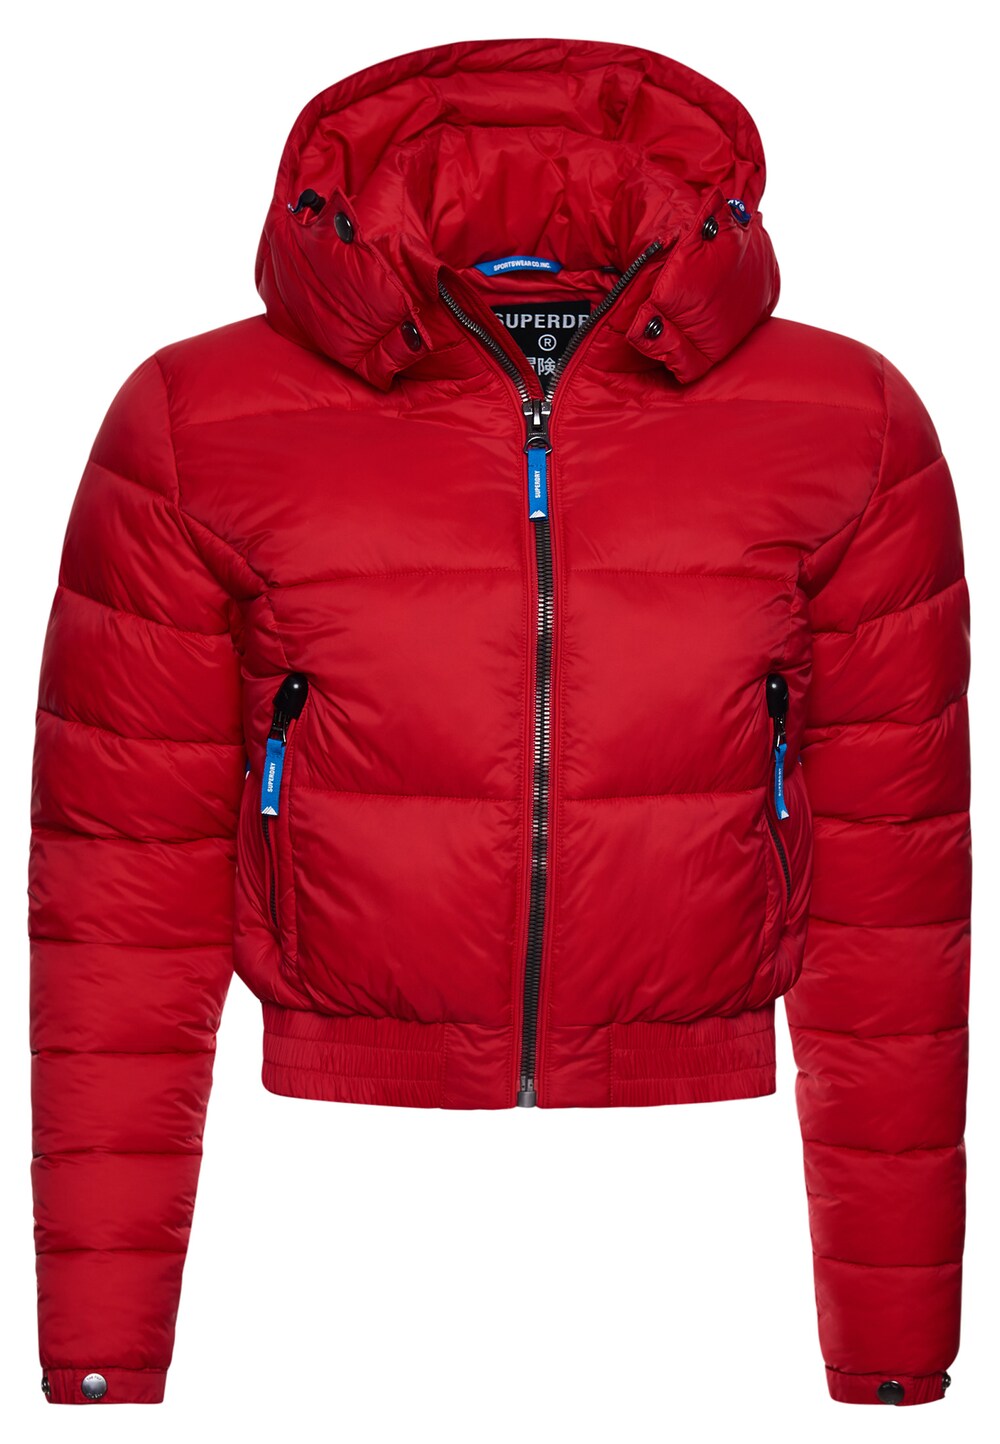 

Межсезонная куртка Superdry Fuji, ярко-красный